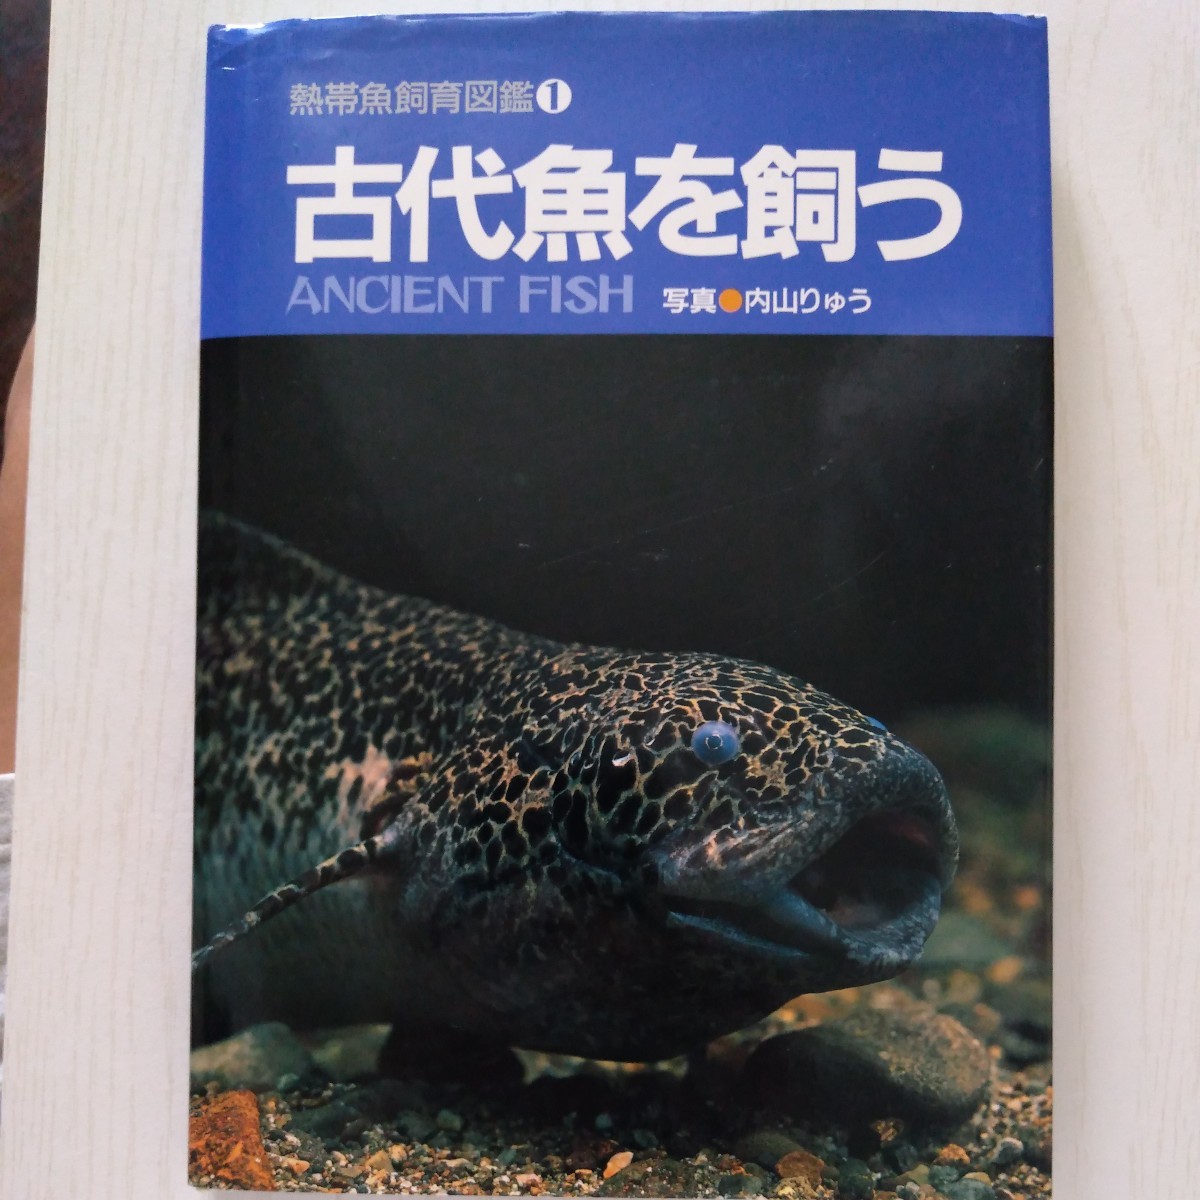 古代魚を飼う 熱帯魚飼育図鑑1 内山りゅう 小寺春人 マリン企画 1992年 古書 